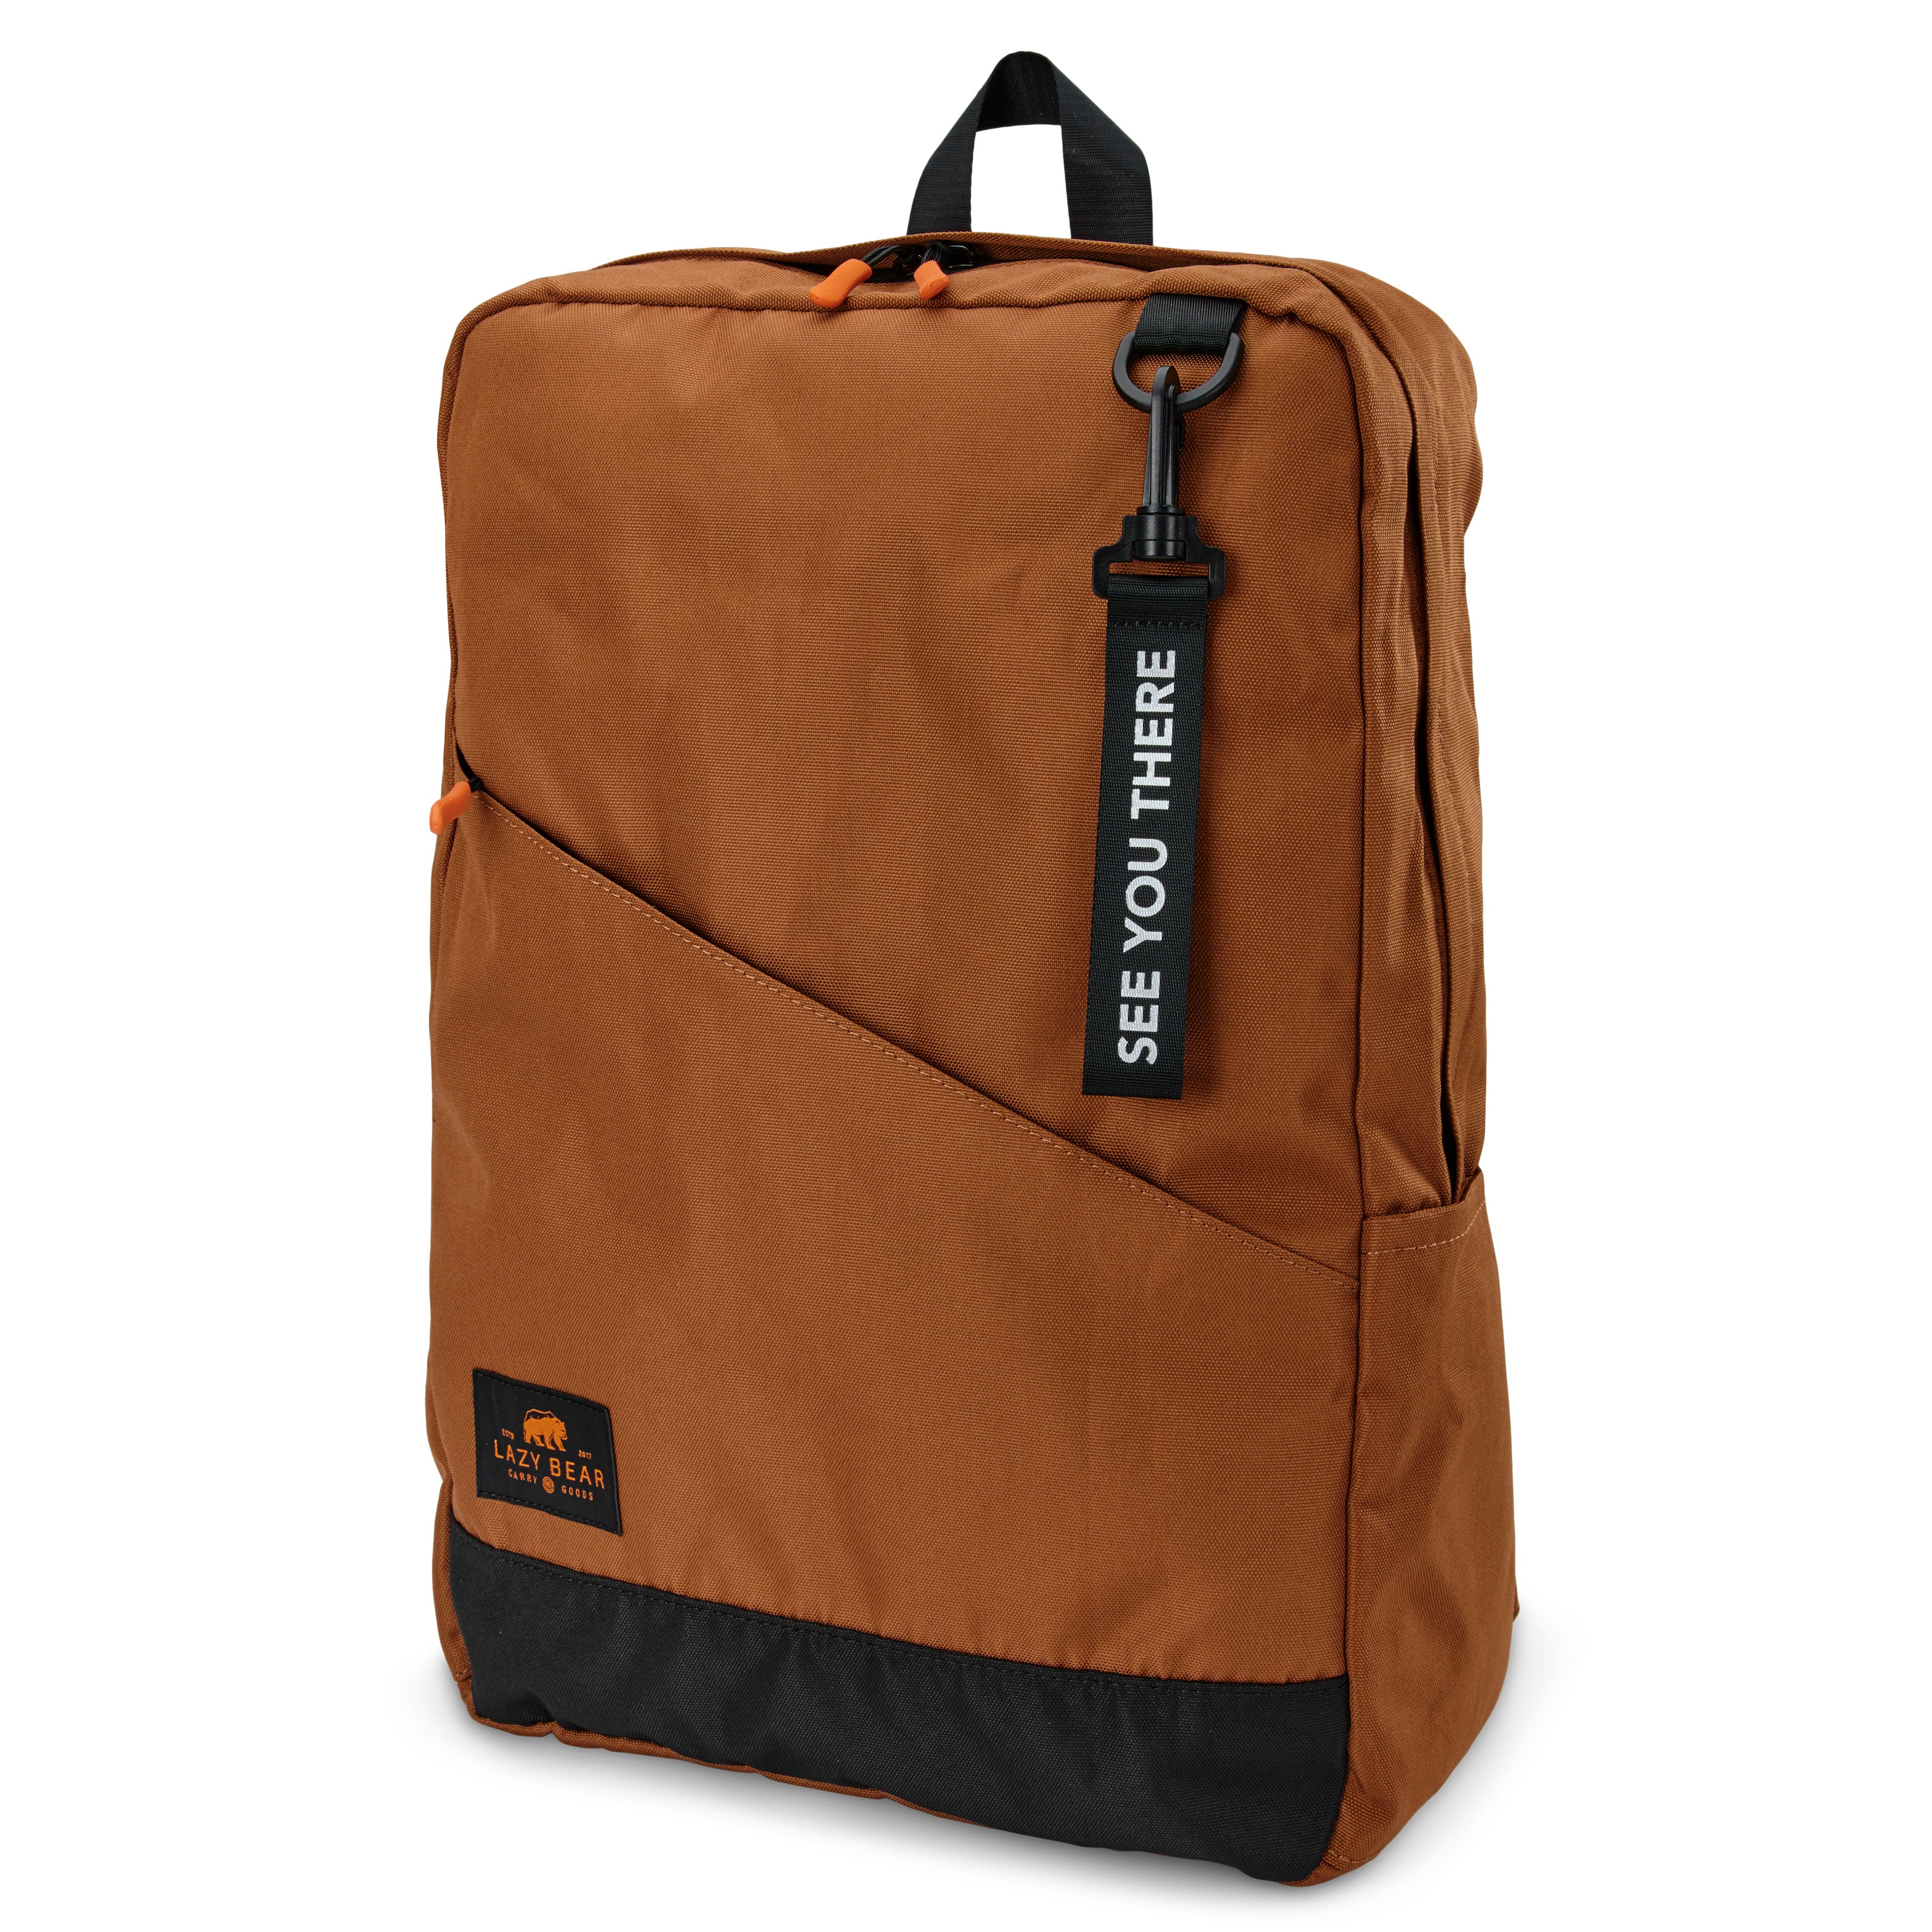 Lemont Brown Foldable Backpack 